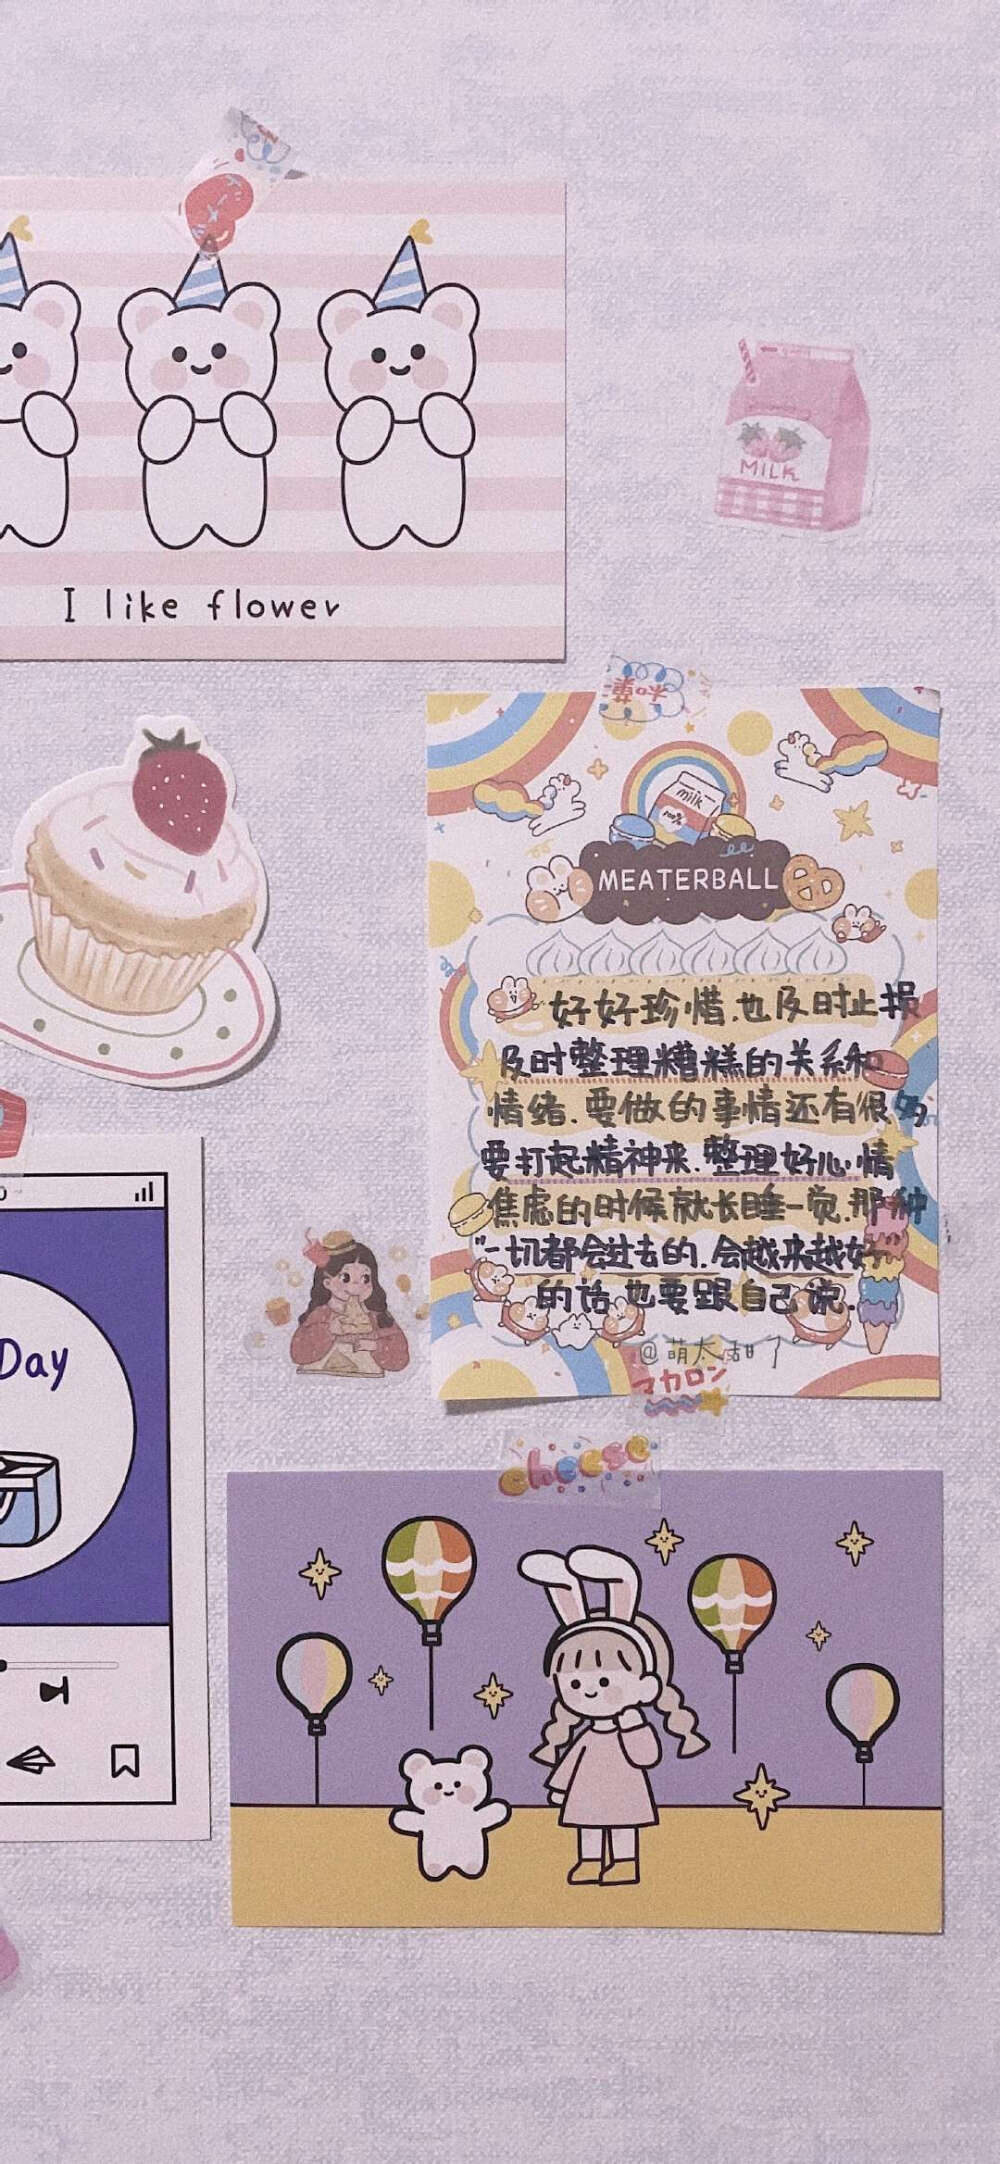 心动文字收集图(小仙女) - 堆糖,美图壁纸兴趣社区